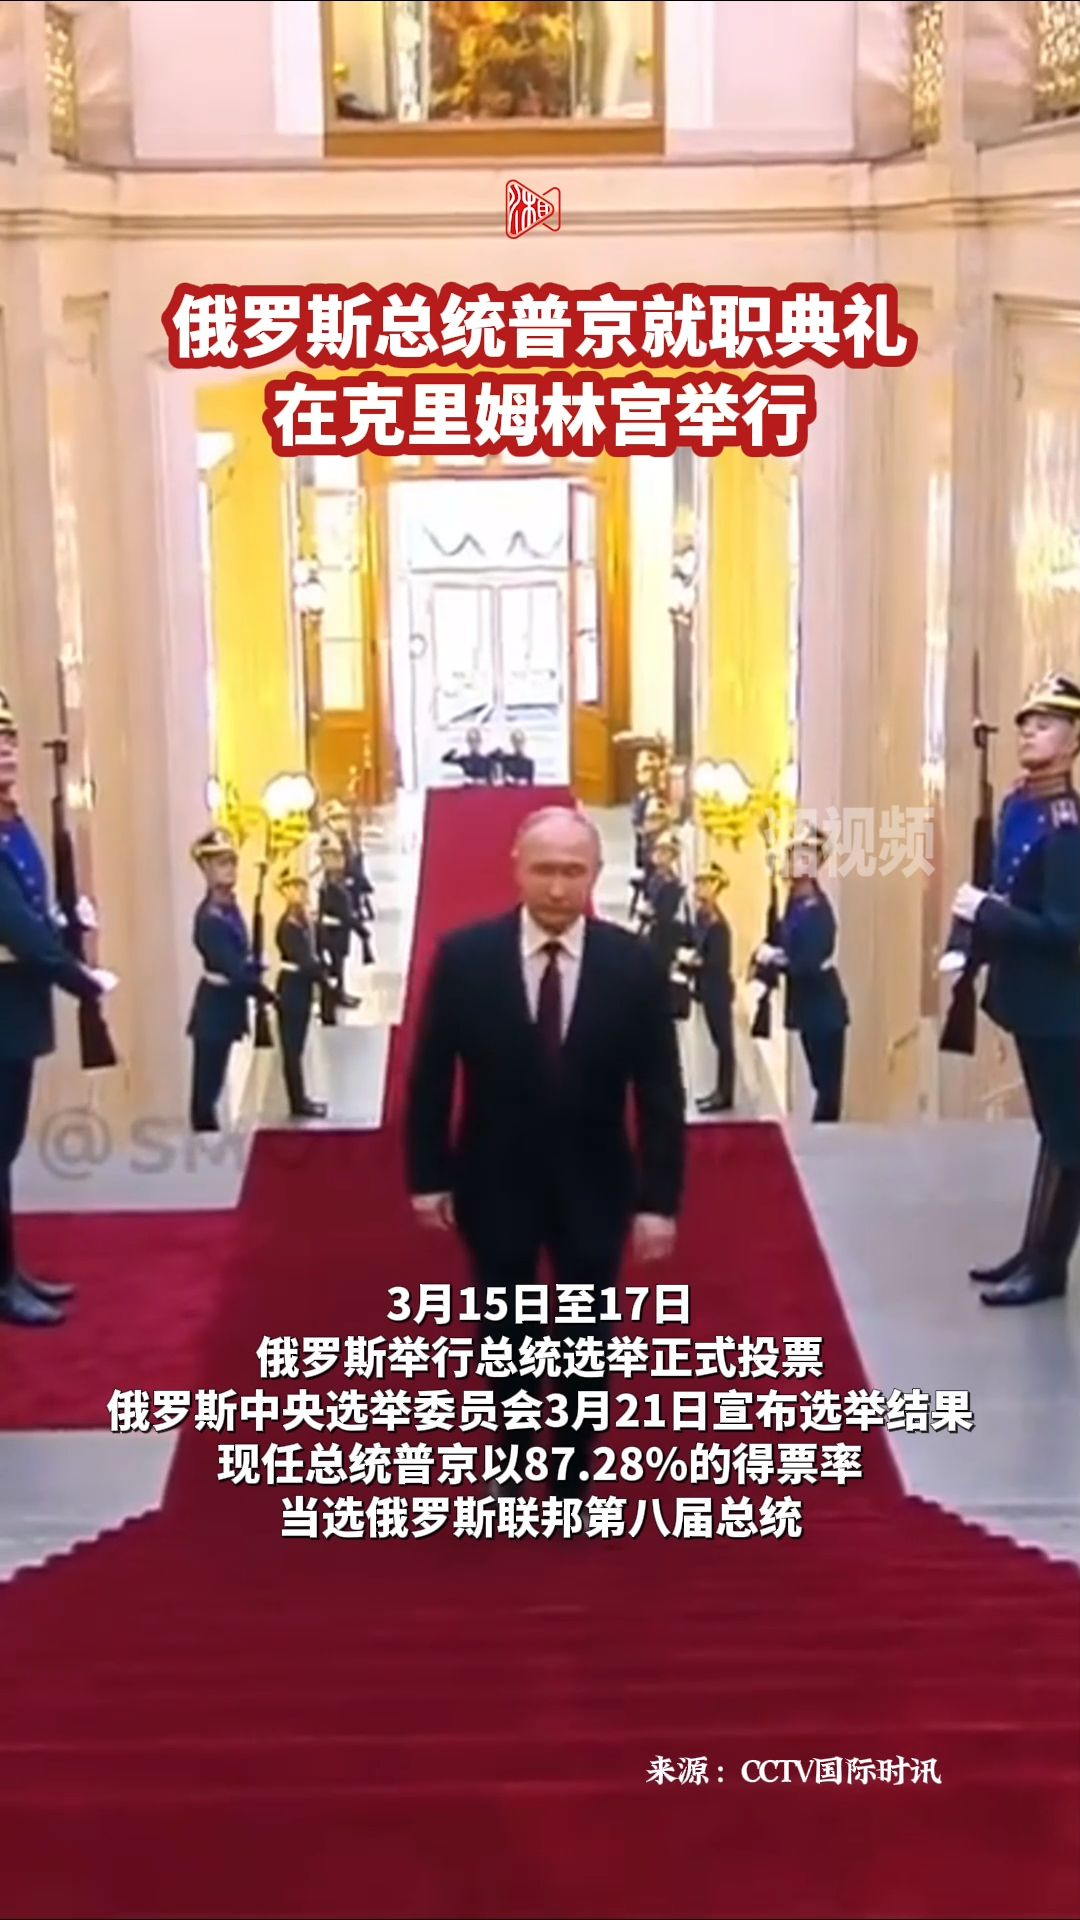 普京宣誓就任俄联邦第八届总统